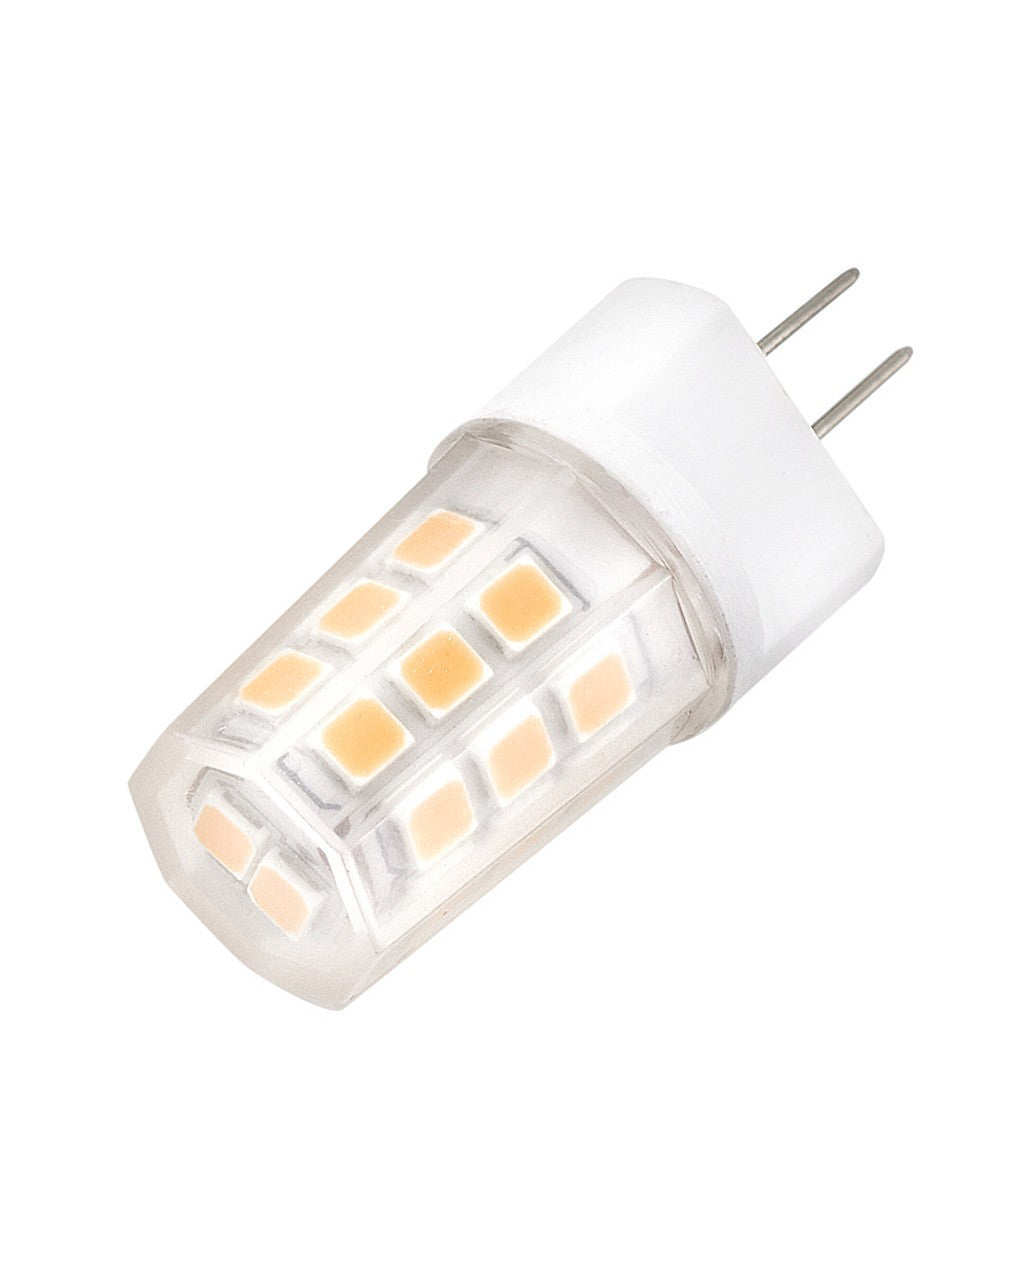 Hinkley - 00T3-27LED-1.5 - Light Bulb - Led Bulb